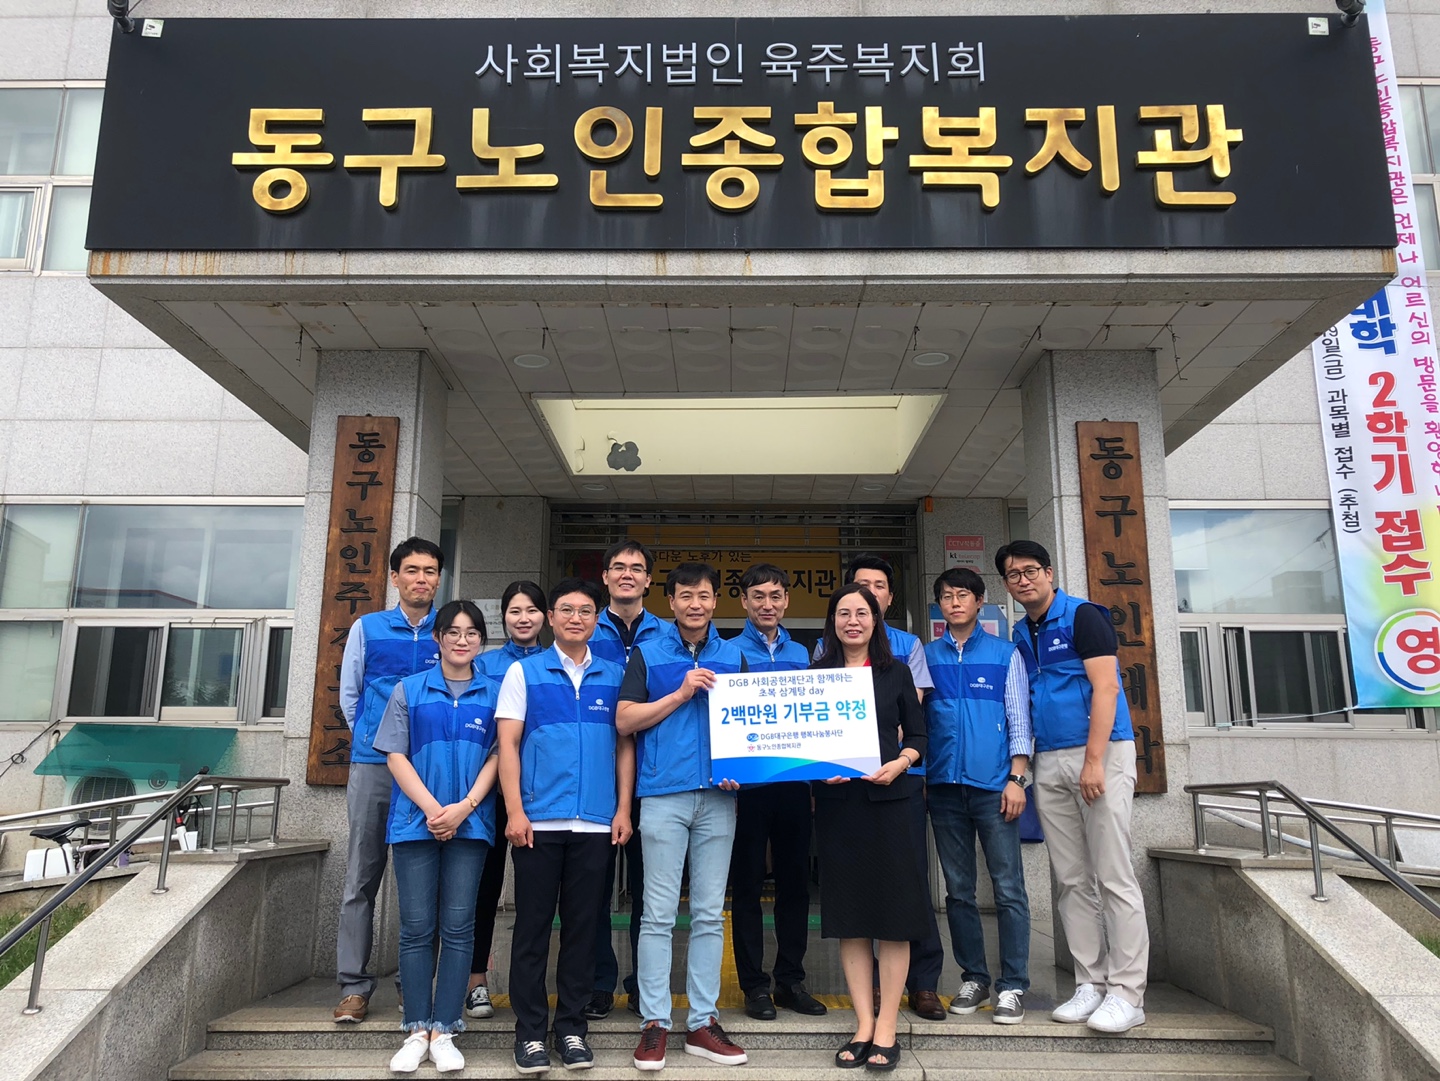 2019년 DGB사회공헌재단 대구은행 행복나눔봉사단과 함께하는 초복 삼계탕 day 관련사진